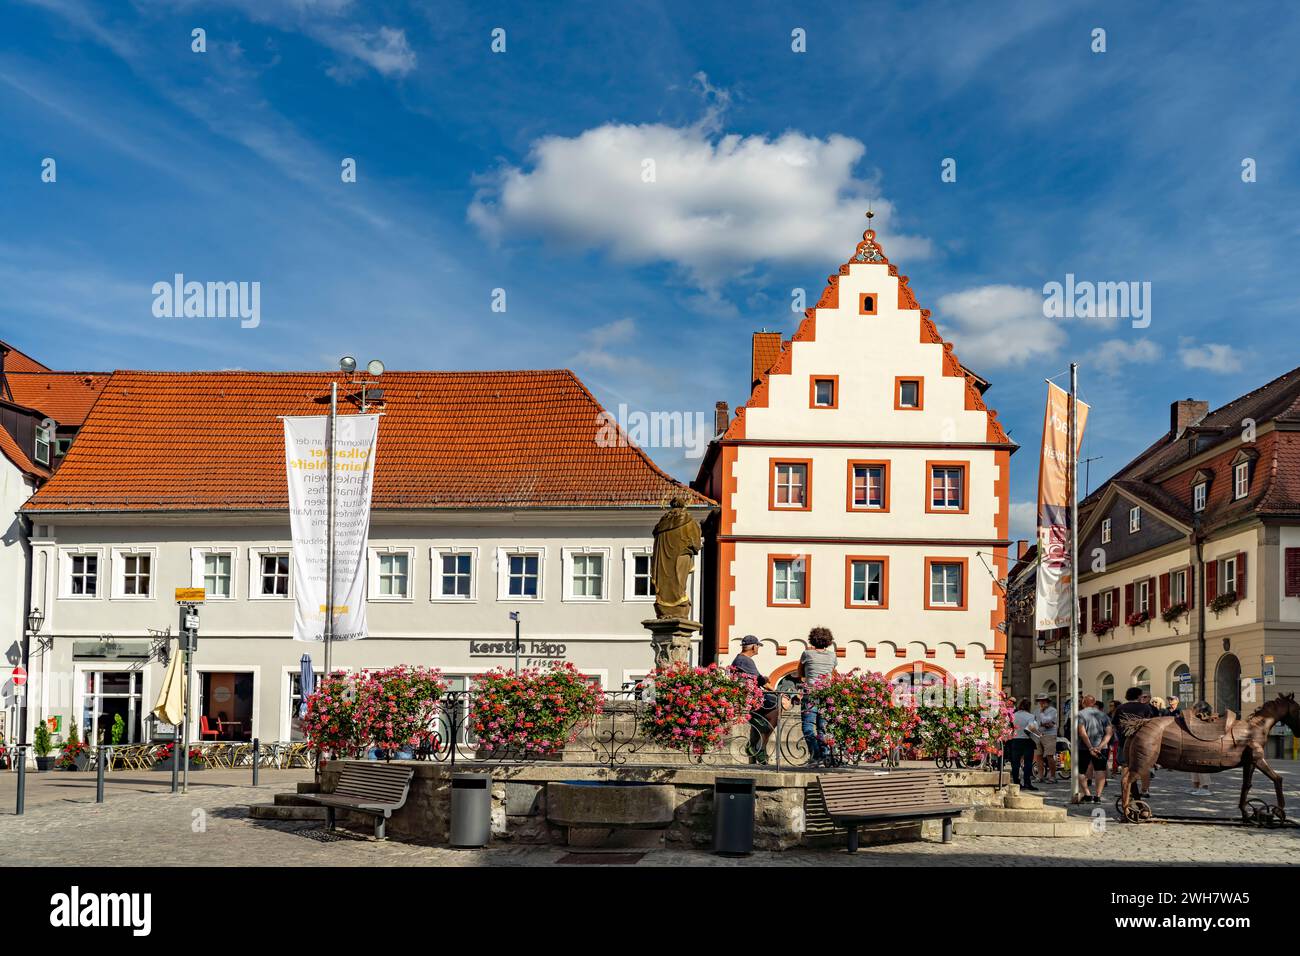 Der Marktplatz in Volkach, Unterfranken, Bayern, Deutschland | Volkach Market Square, bassa Franconia, Baviera, Germania Foto Stock